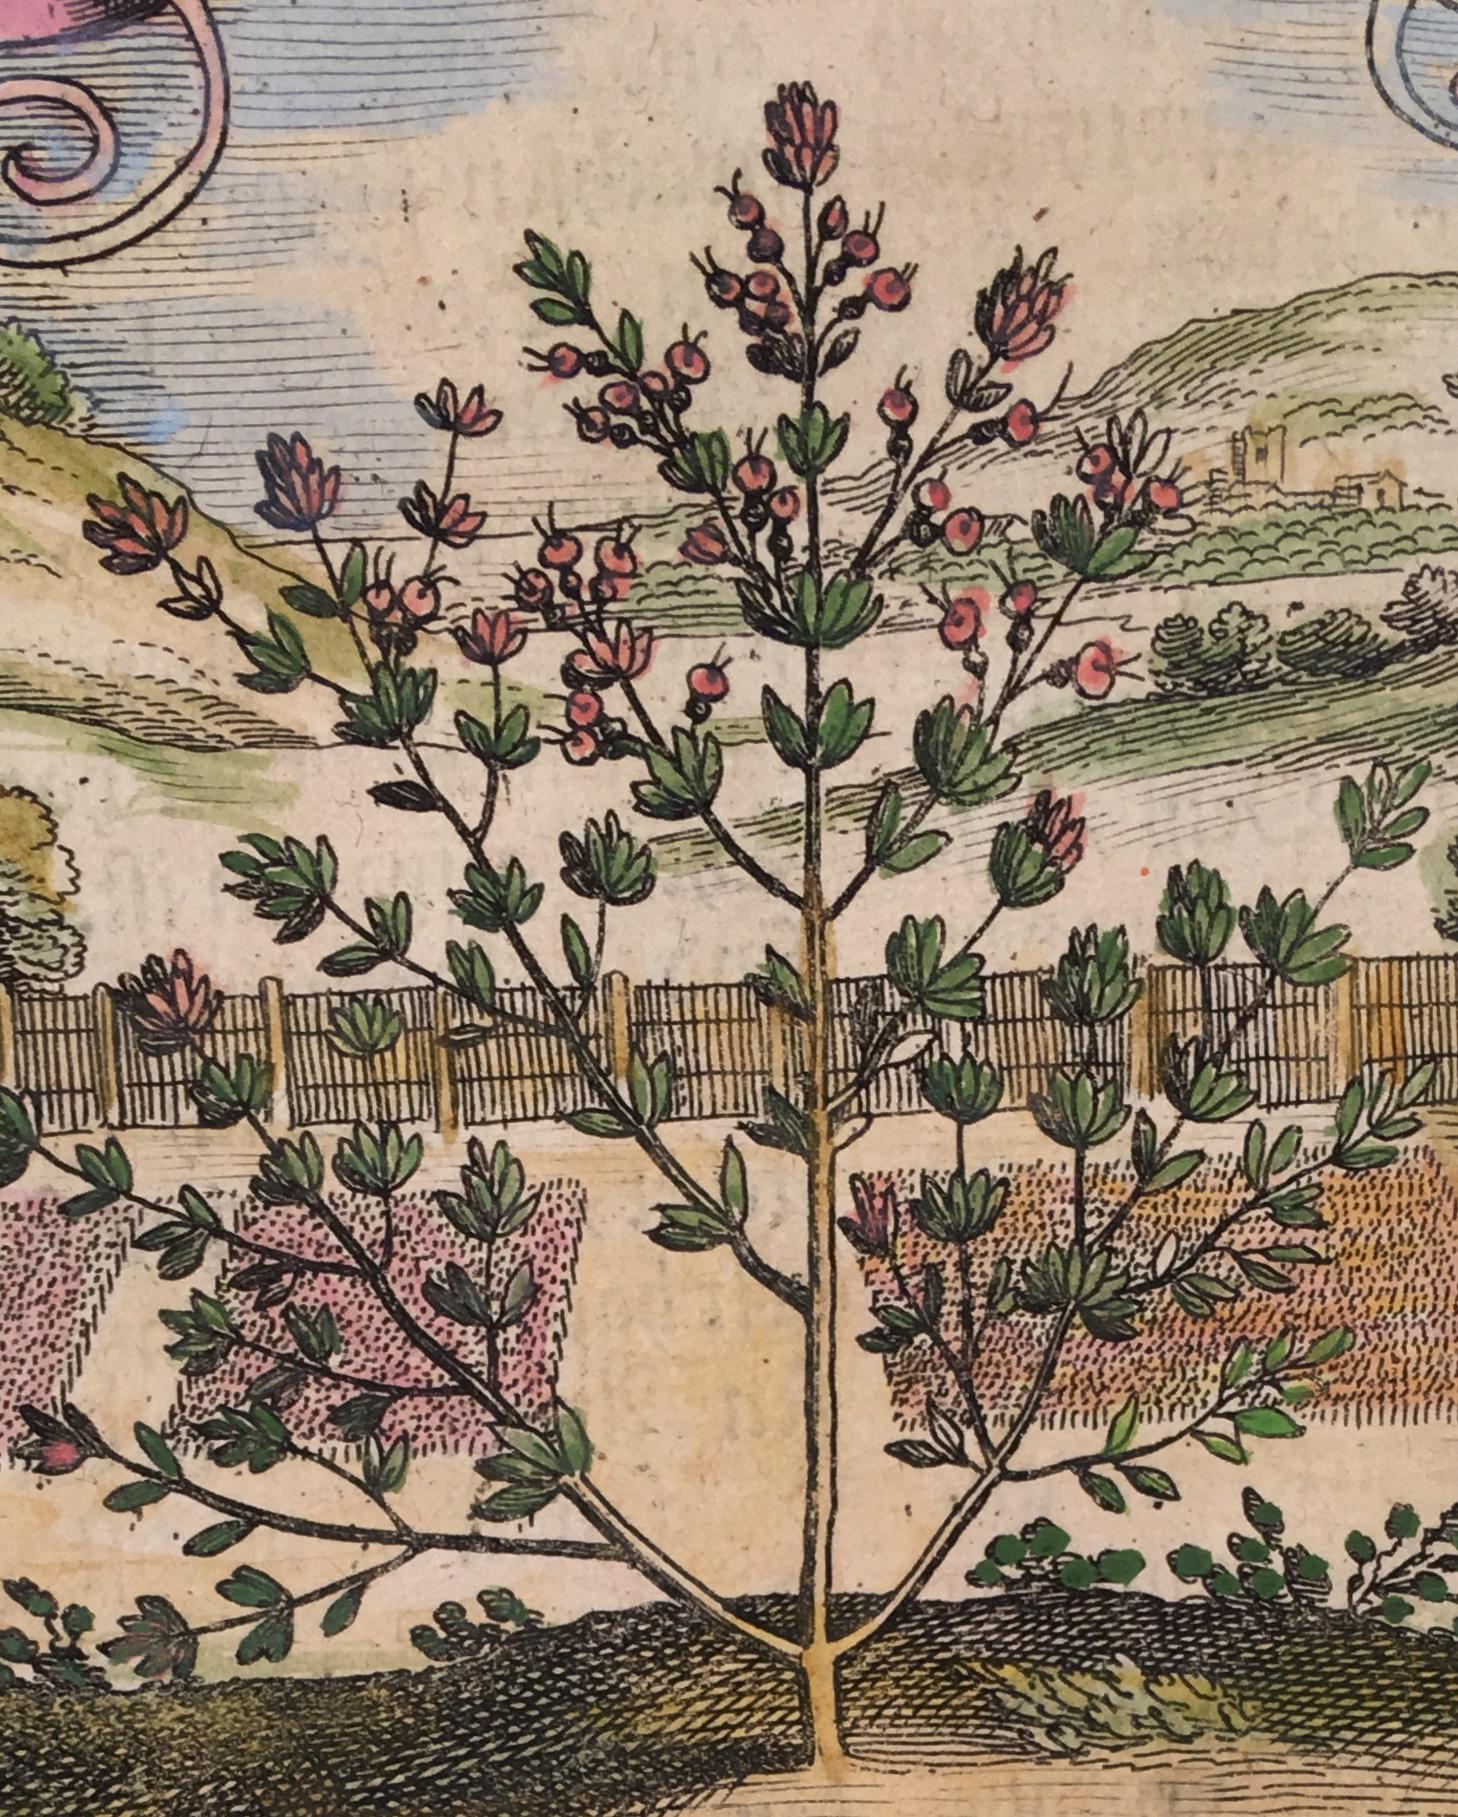  Thyme in 18th Century Garden Landscape by Matthaeus Merian For Sale 1